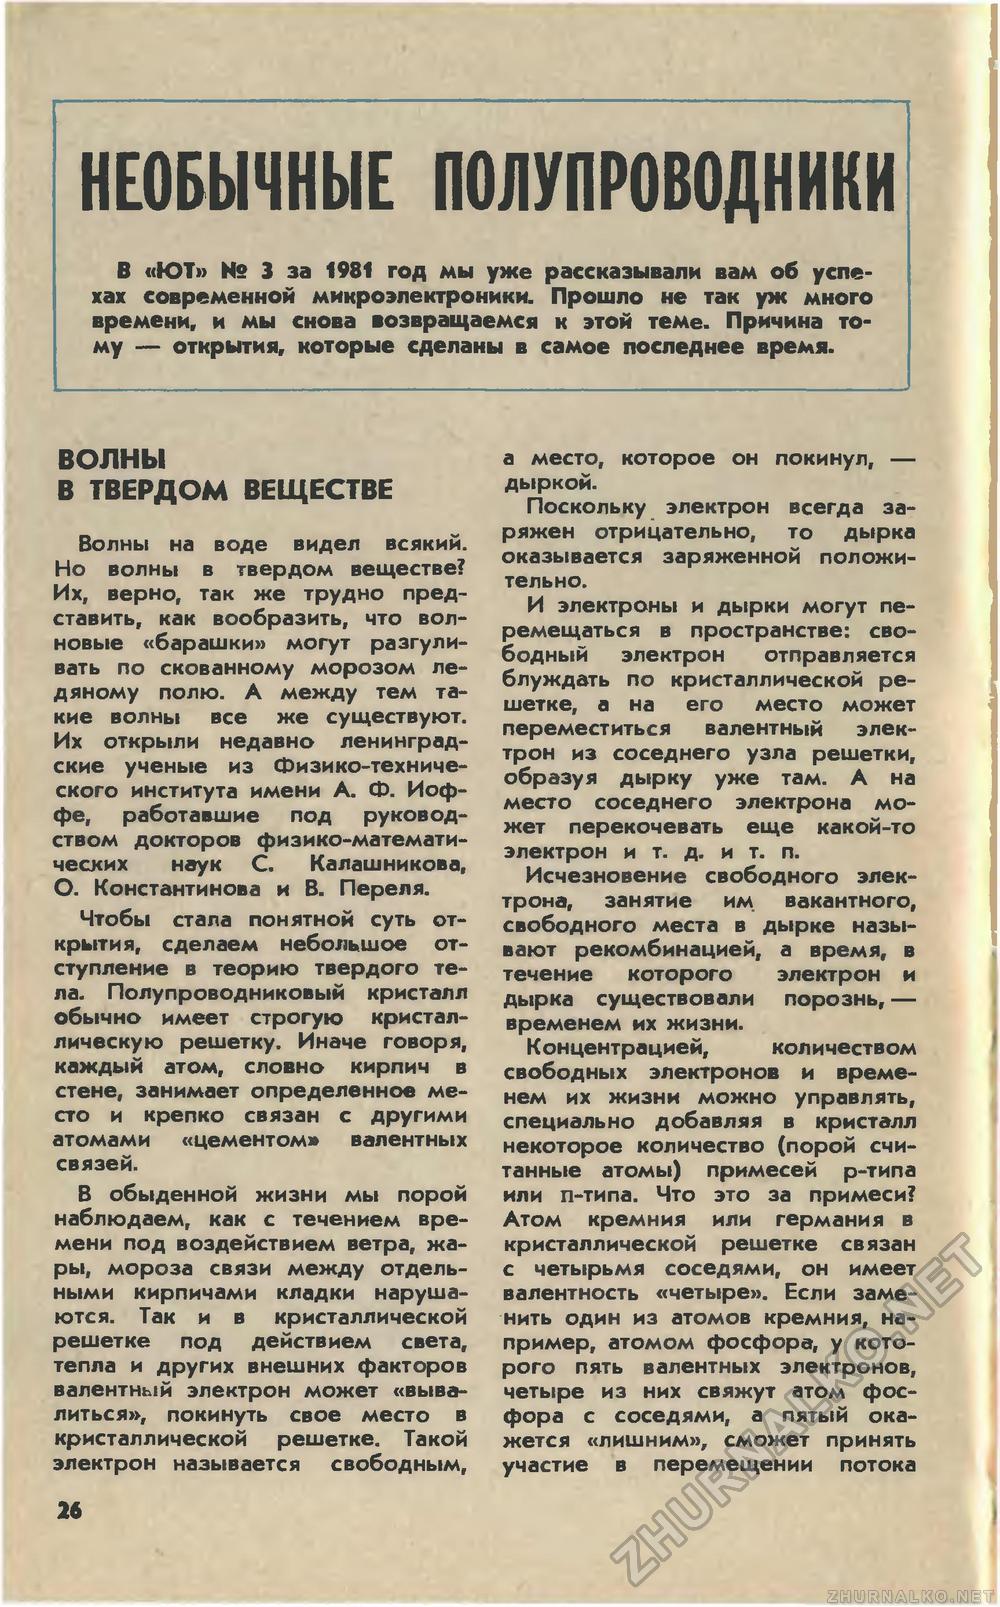   1981-12,  28